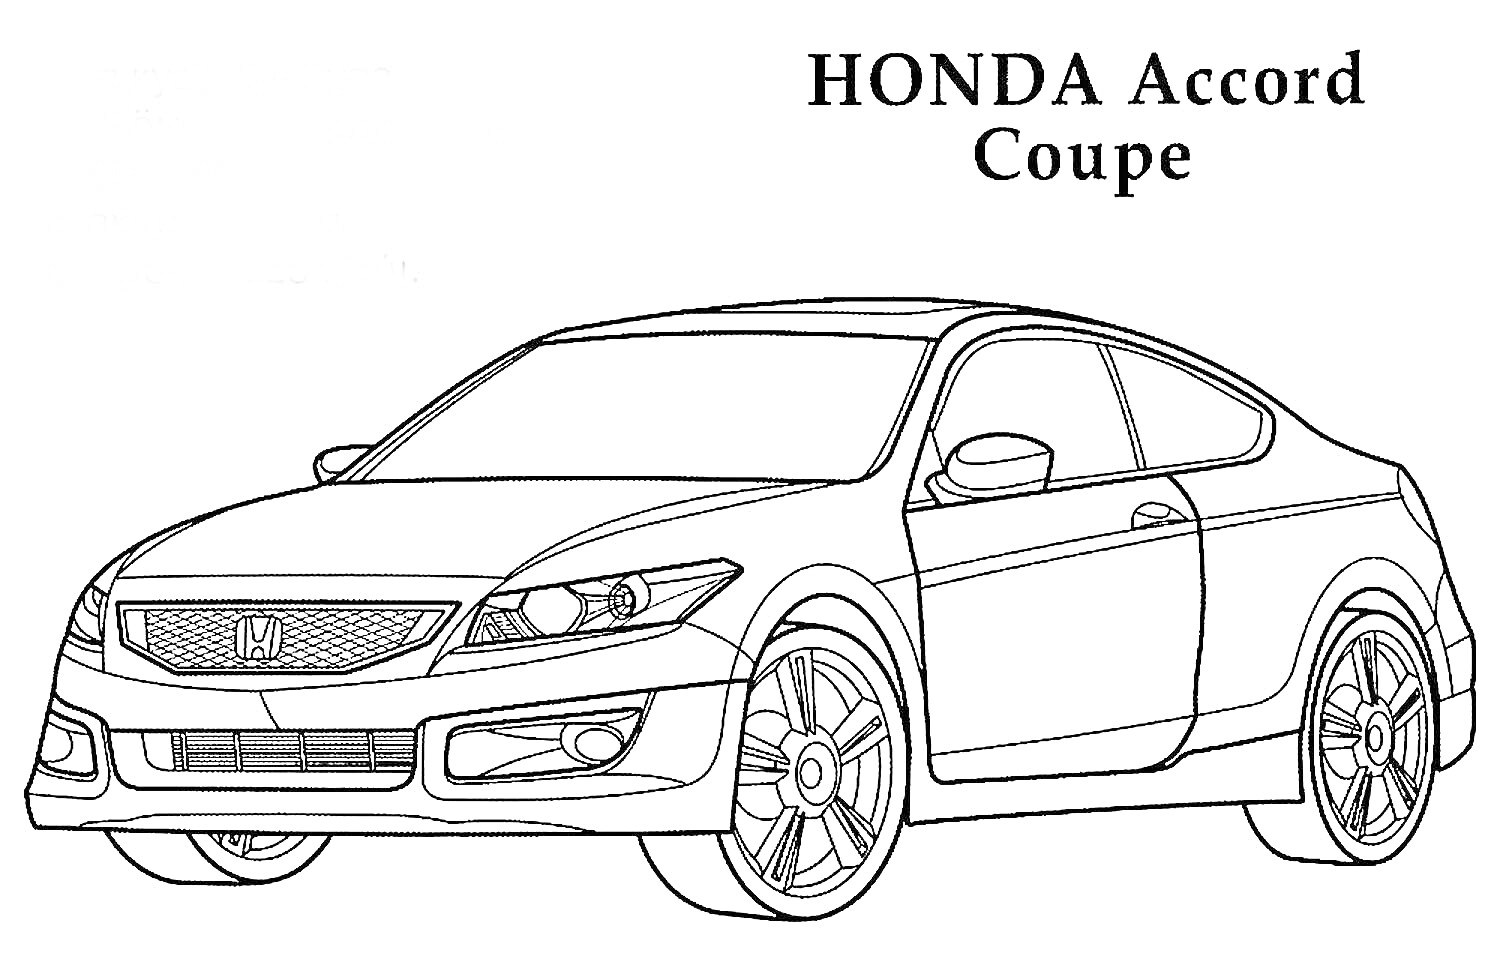 HONDA Accord Coupe с передними и задними фарами, передней решеткой радиатора, капотом, боковыми зеркалами и колесами